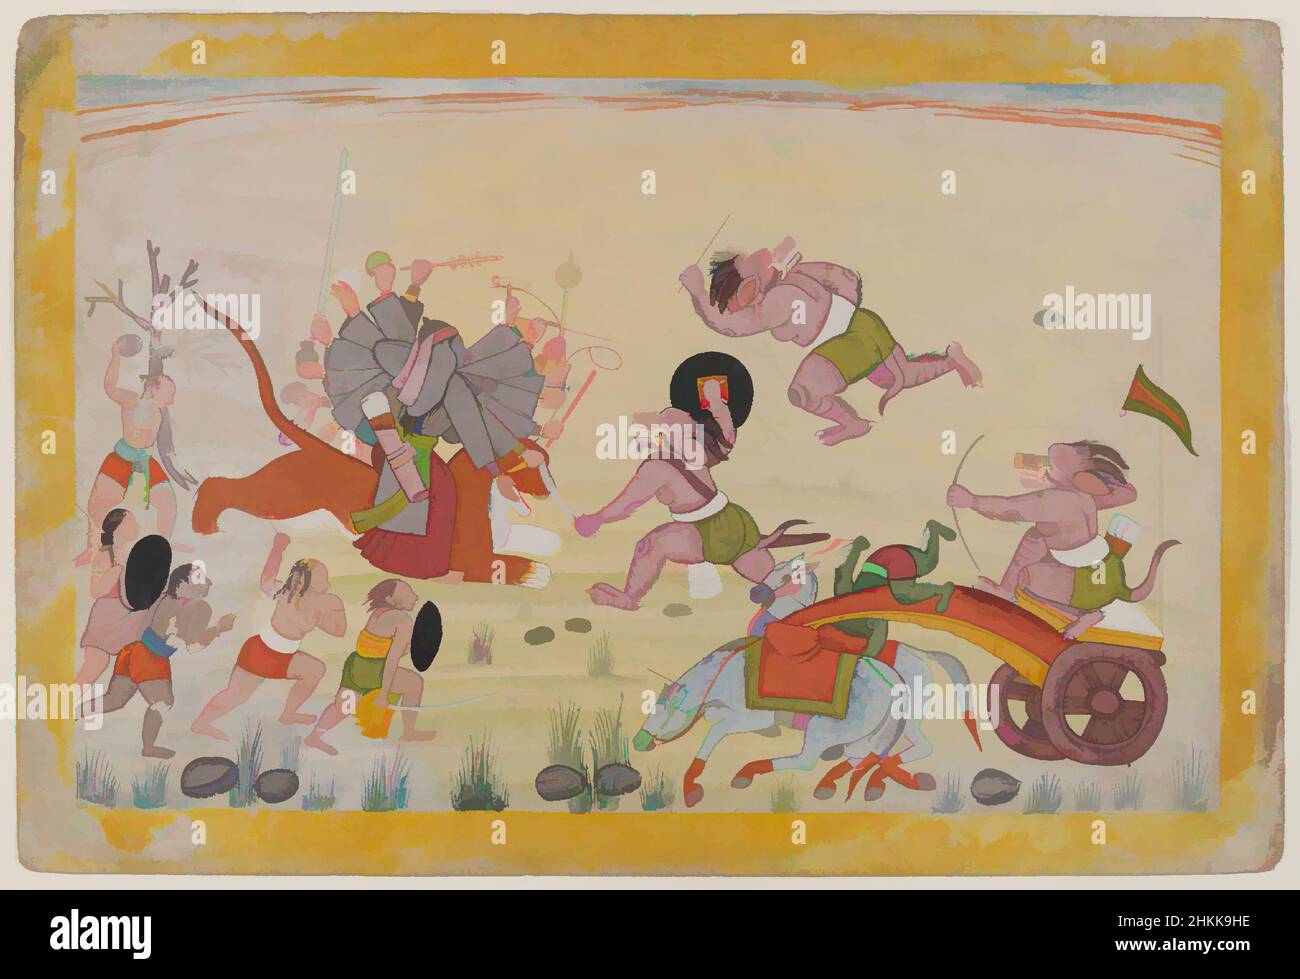 Art inspiré par Mahasura attaque le Devi, Folio d'une série dispersée de Mahatmya Devi, Indian, aquarelle opaque sur papier, Guler, Punjab Hills, Inde, ca. 1770-1780, feuille : 7 7/8 x 11 5/8 po, 20,0 x 29,5 cm, 18th siècle, animaux, flèches, asiatique, Art asiatique, attaque, bataille, arcs, oeuvres classiques modernisées par Artotop avec une touche de modernité. Formes, couleur et valeur, impact visuel accrocheur sur l'art émotions par la liberté d'œuvres d'art d'une manière contemporaine. Un message intemporel qui cherche une nouvelle direction créative. Artistes qui se tournent vers le support numérique et créent le NFT Artotop Banque D'Images